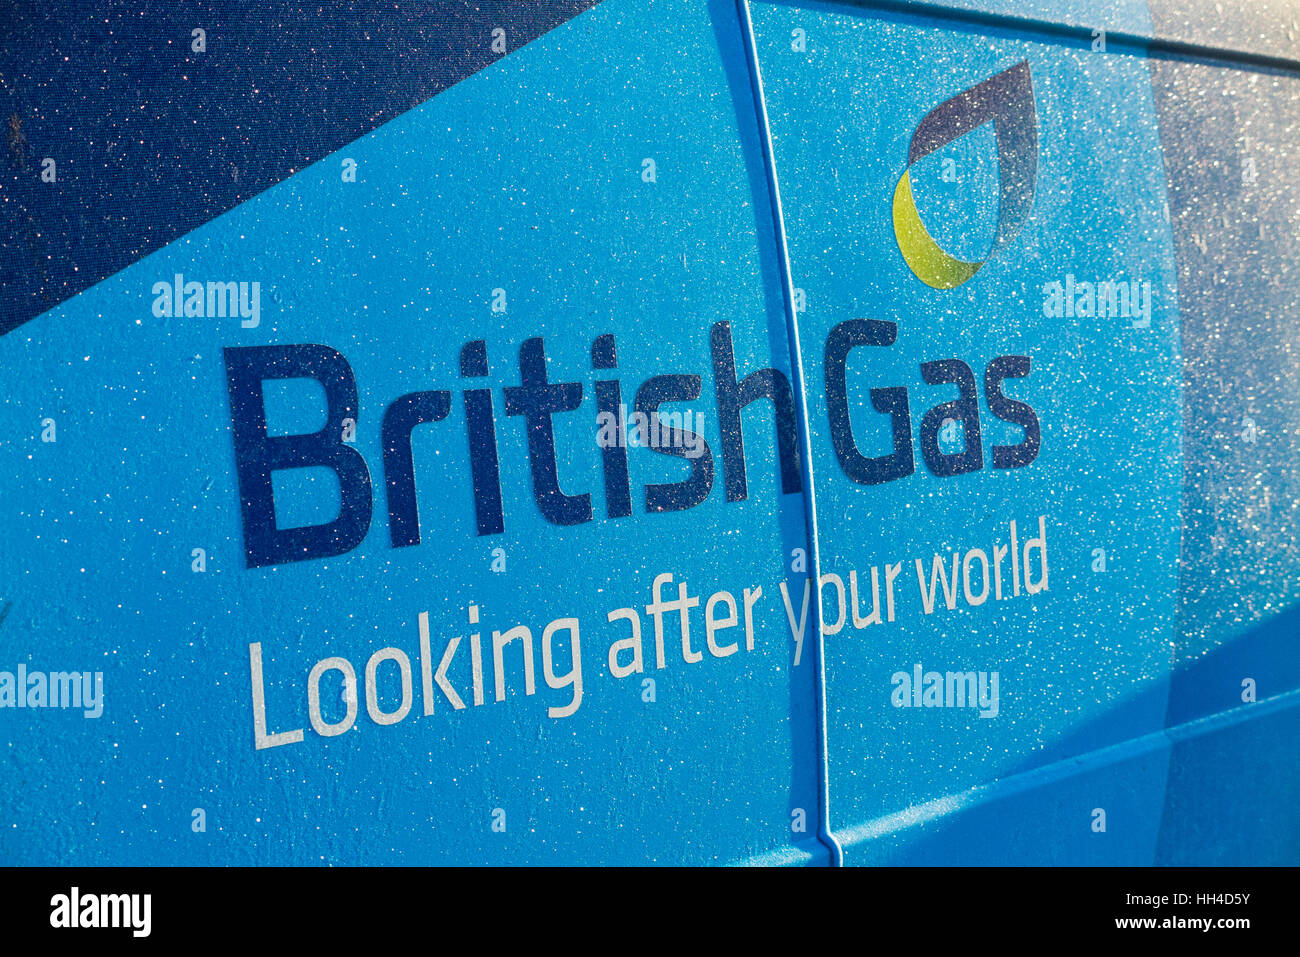 Gefrieren Sie eiskalten British Gas van / Schild / Logo mit funkelnden bedeckt / funkelnden Frost an kalten frostigen eisigen Wintermorgen. VEREINIGTES KÖNIGREICH. Könnte verwendet werden, um steigende Gasrechnungen und Energiepreise zu veranschaulichen. Stockfoto